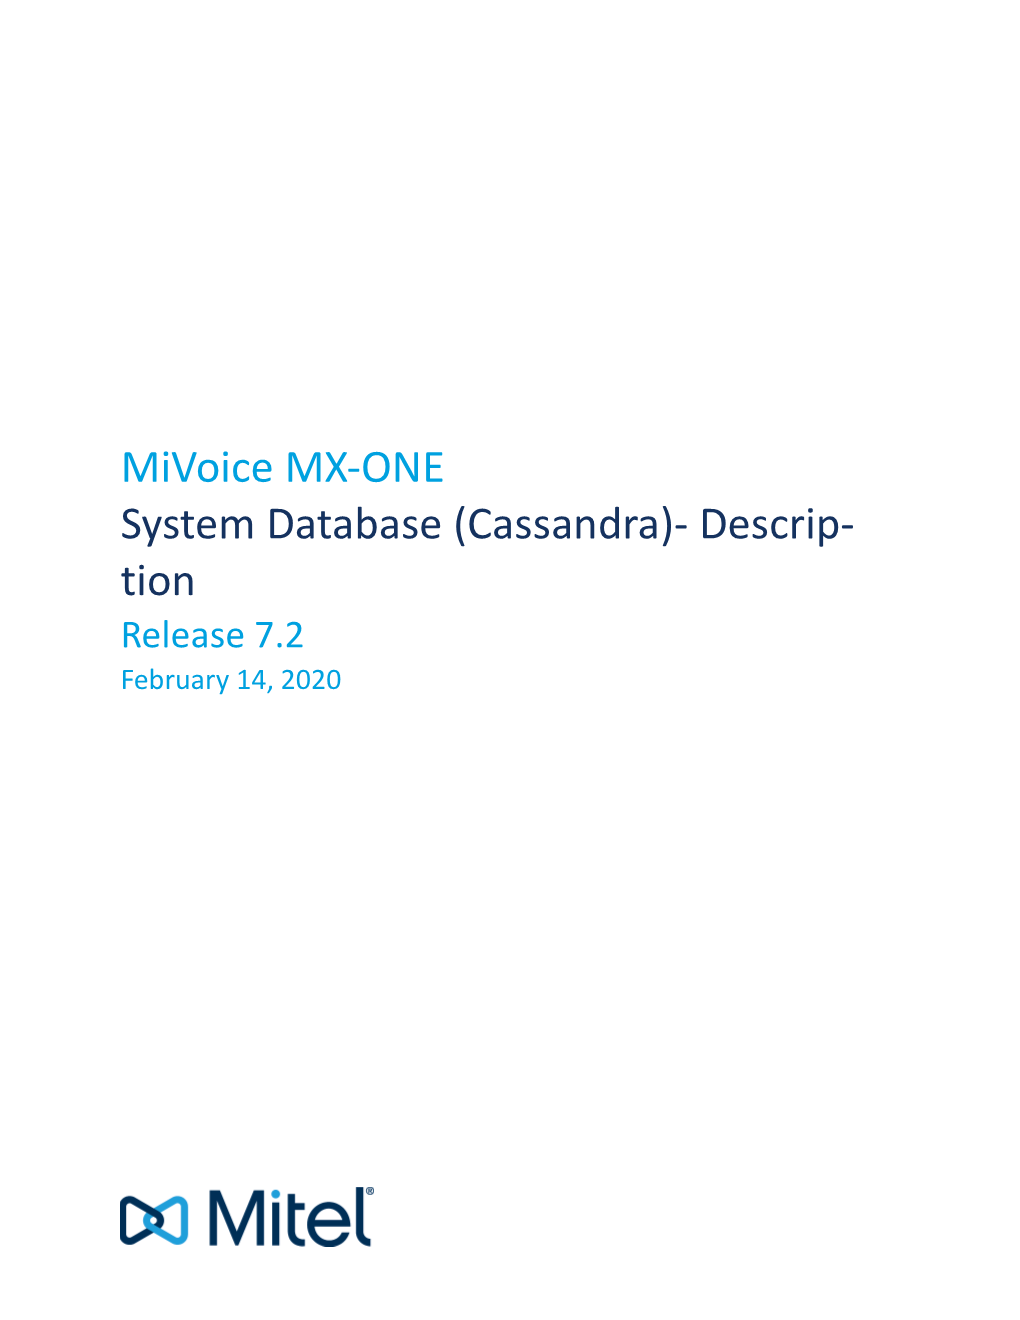 Cassandra)- Descrip- Tion Release 7.2 February 14, 2020